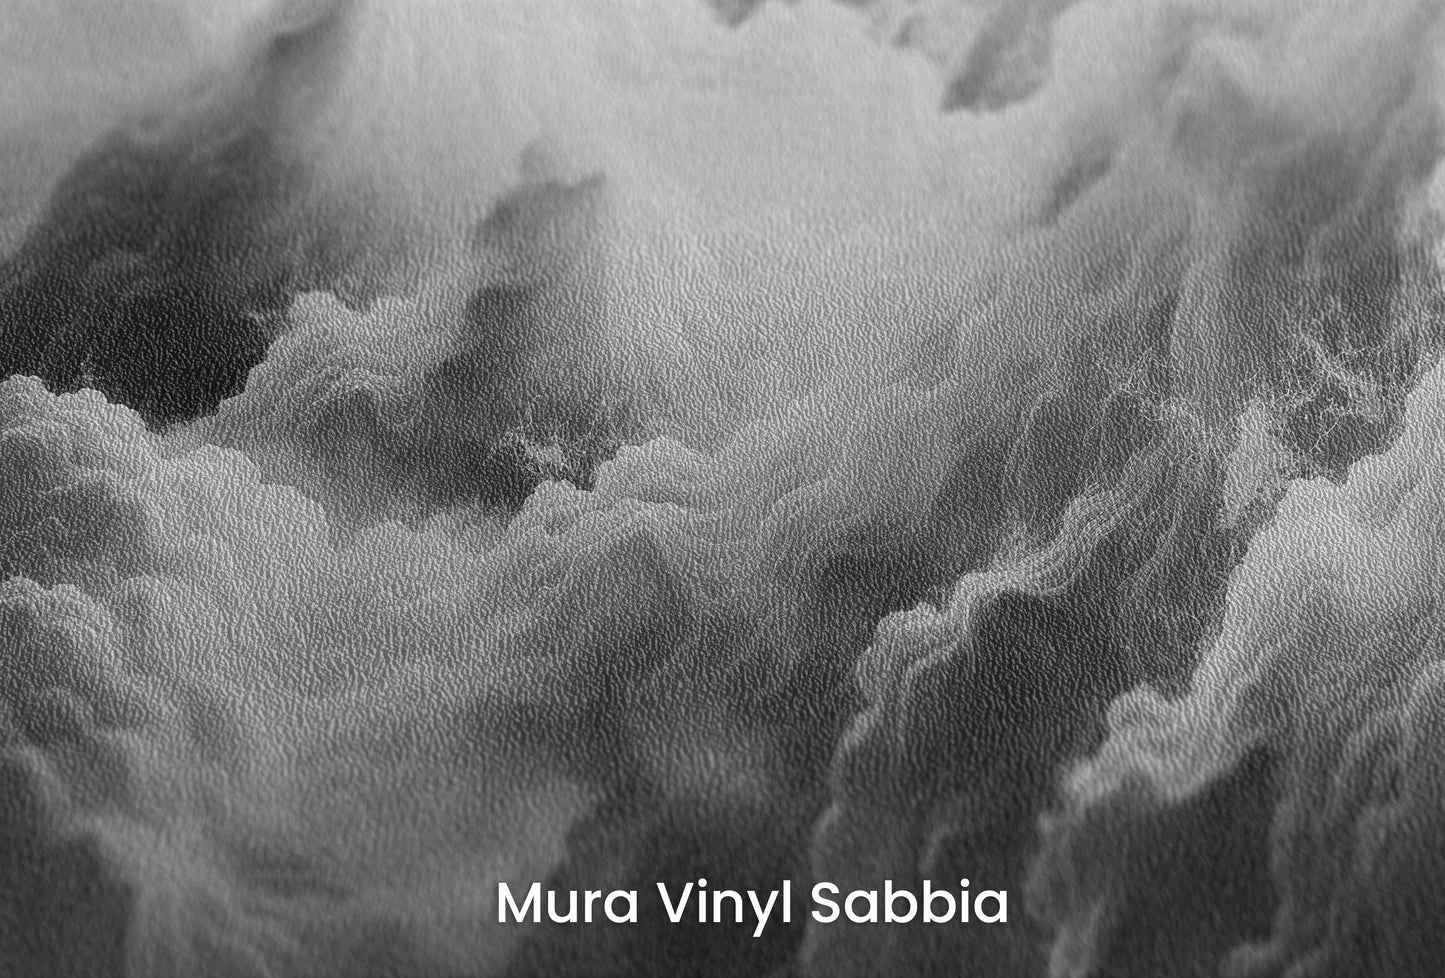 Zbliżenie na artystyczną fototapetę o nazwie Ethereal Stratus na podłożu Mura Vinyl Sabbia struktura grubego ziarna piasku.